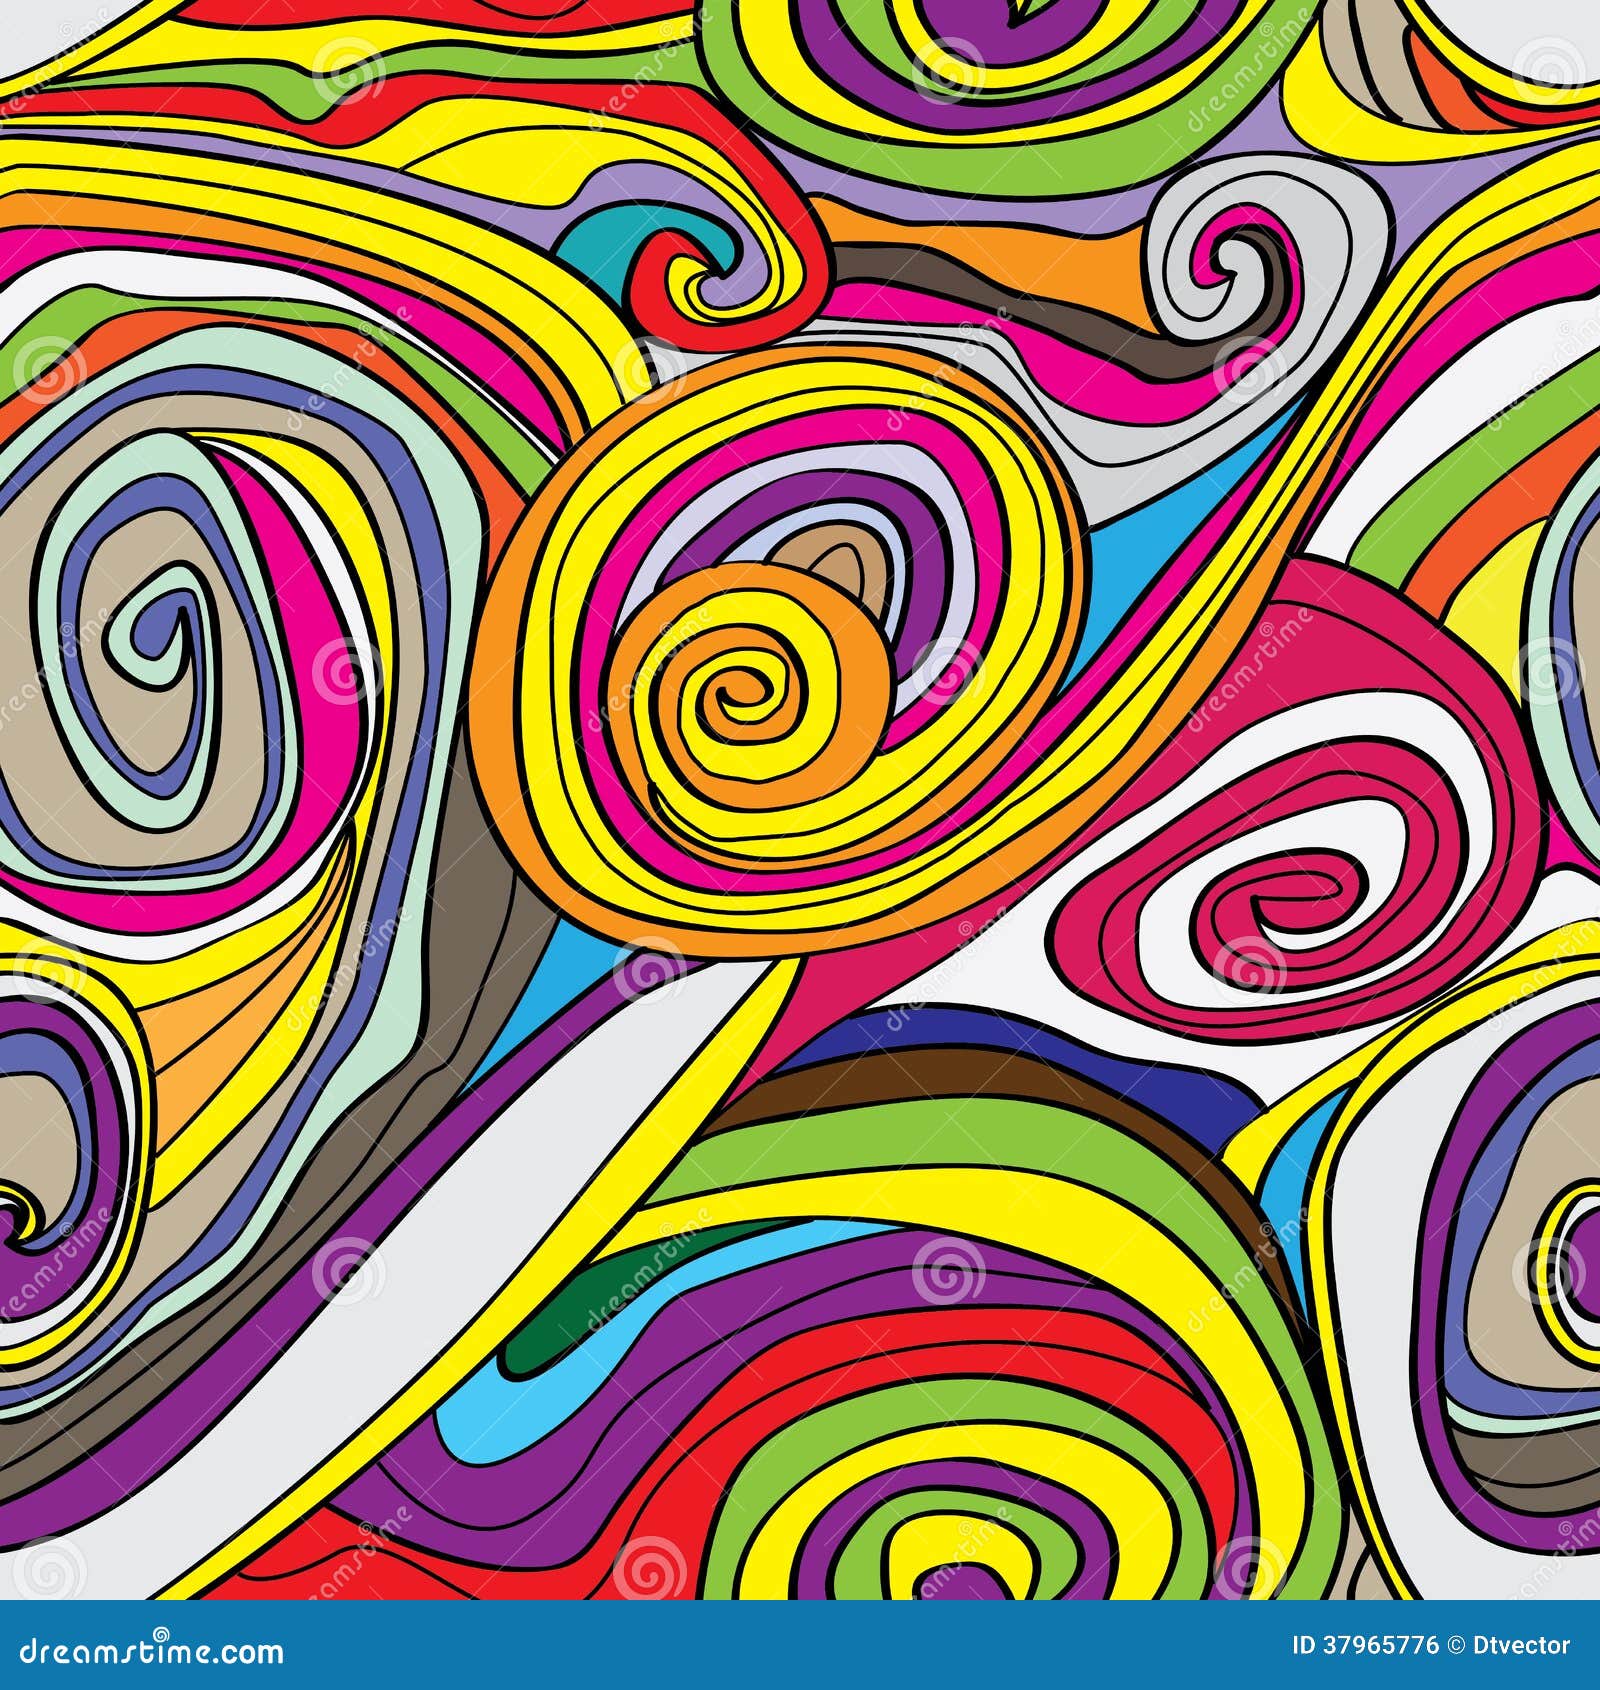 swirly drawn seamless pattern